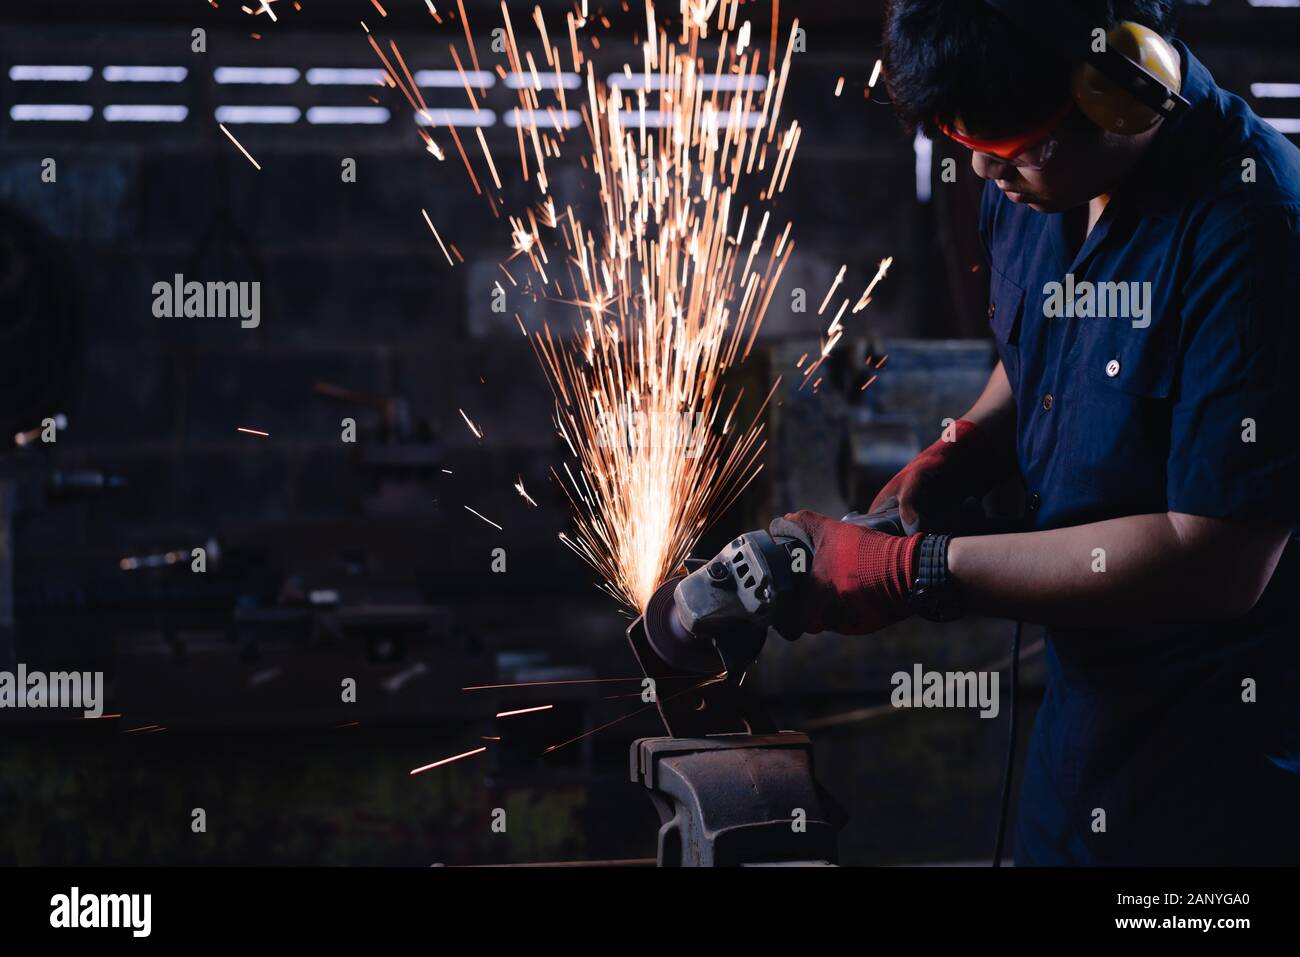 Industrielle Metallarbeiter in Asien tragen Schutzkleidung und verwenden in dunklen Produktionsbetrieben Stromwerkzeuge und -Geräte mit hellen heißen Funken und Kopierräumen Stockfoto